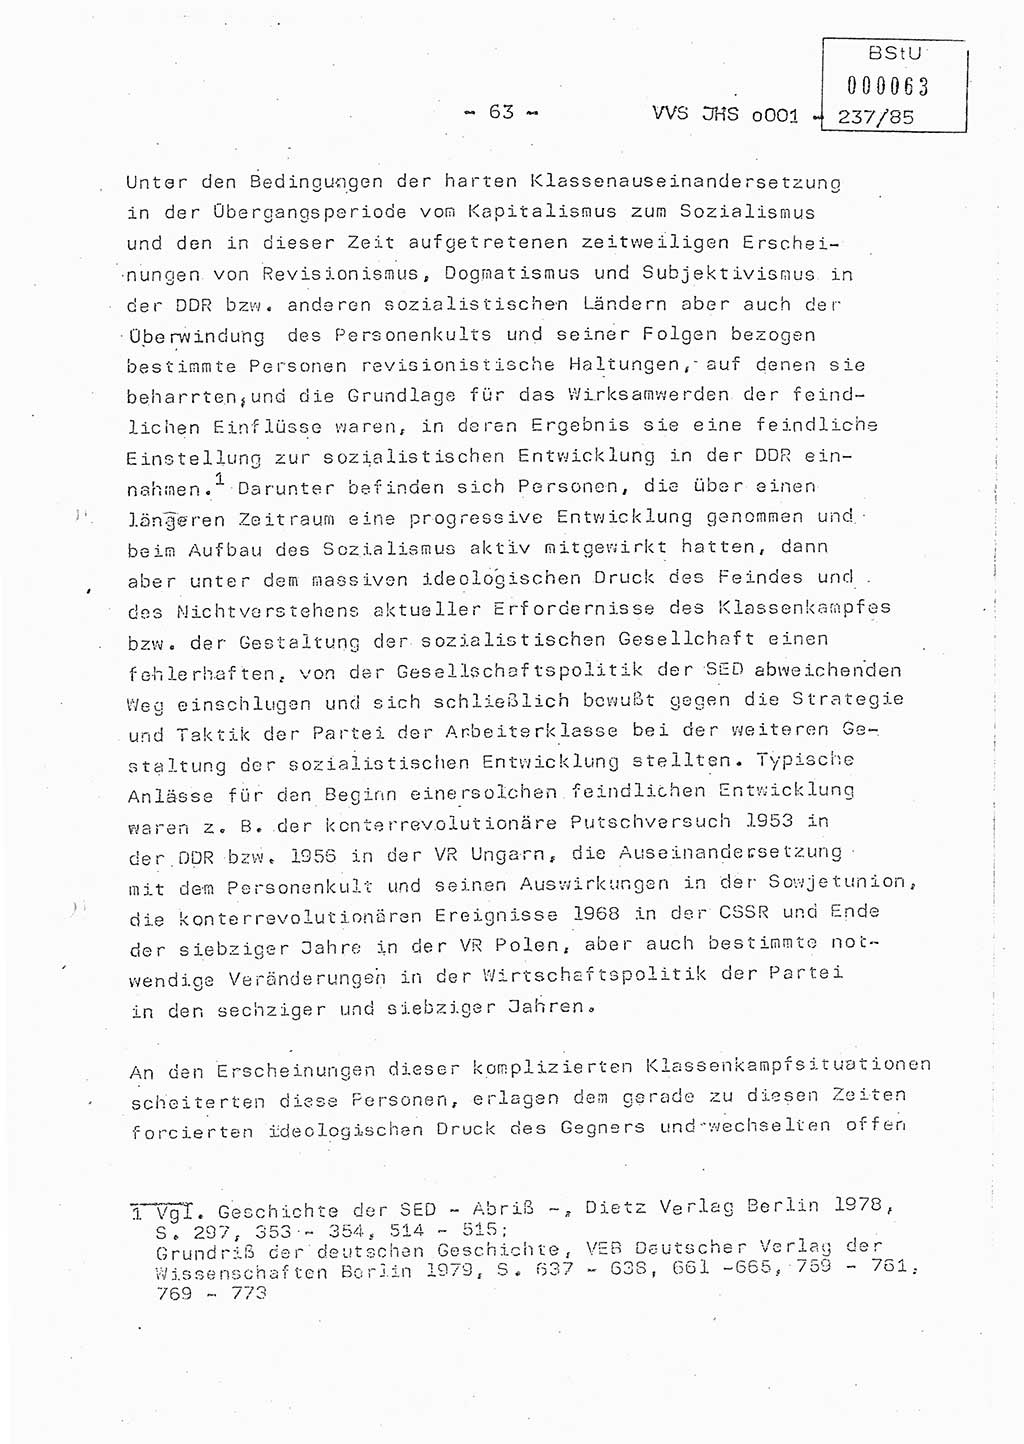 Dissertation Oberstleutnant Peter Jakulski (JHS), Oberstleutnat Christian Rudolph (HA Ⅸ), Major Horst Böttger (ZMD), Major Wolfgang Grüneberg (JHS), Major Albert Meutsch (JHS), Ministerium für Staatssicherheit (MfS) [Deutsche Demokratische Republik (DDR)], Juristische Hochschule (JHS), Vertrauliche Verschlußsache (VVS) o001-237/85, Potsdam 1985, Seite 63 (Diss. MfS DDR JHS VVS o001-237/85 1985, S. 63)